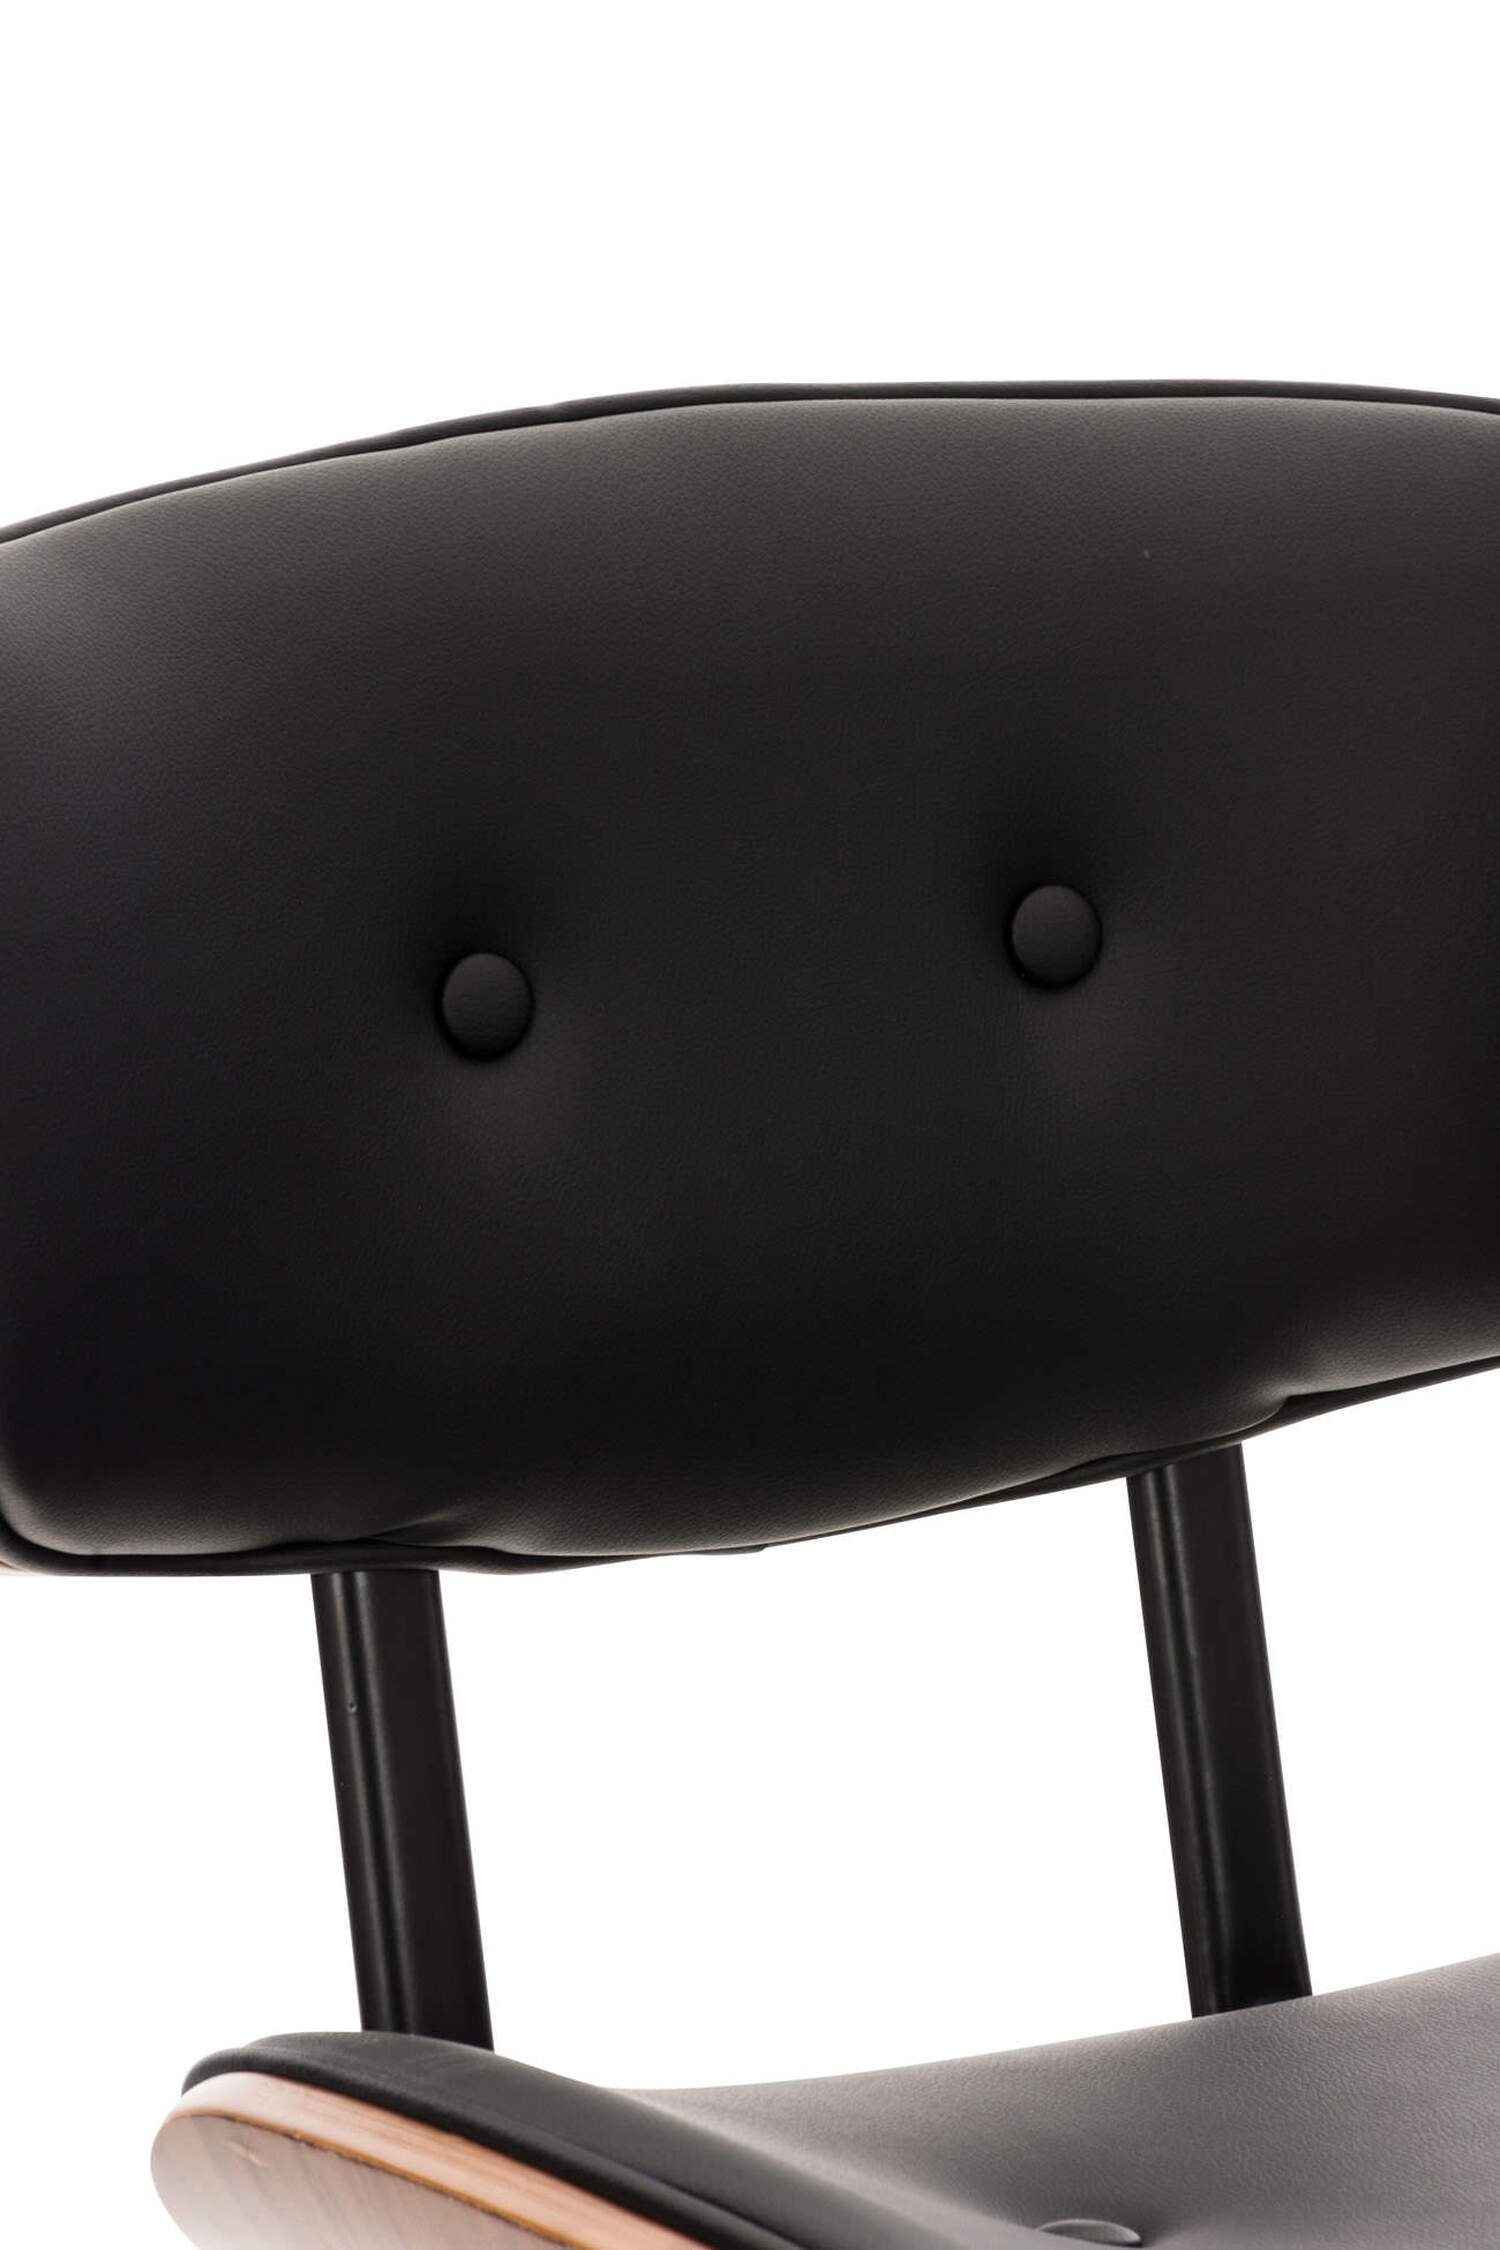 TPFLiving Barhocker Gestell Sarnico für Schwarz Sitzfläche: Rückenlehne & Fußstütze bequemer drehbar), Kunstleder Küche und Sitzfläche - angenehmer - mit Metall Hocker 360° chrom Theke (Barstuhl